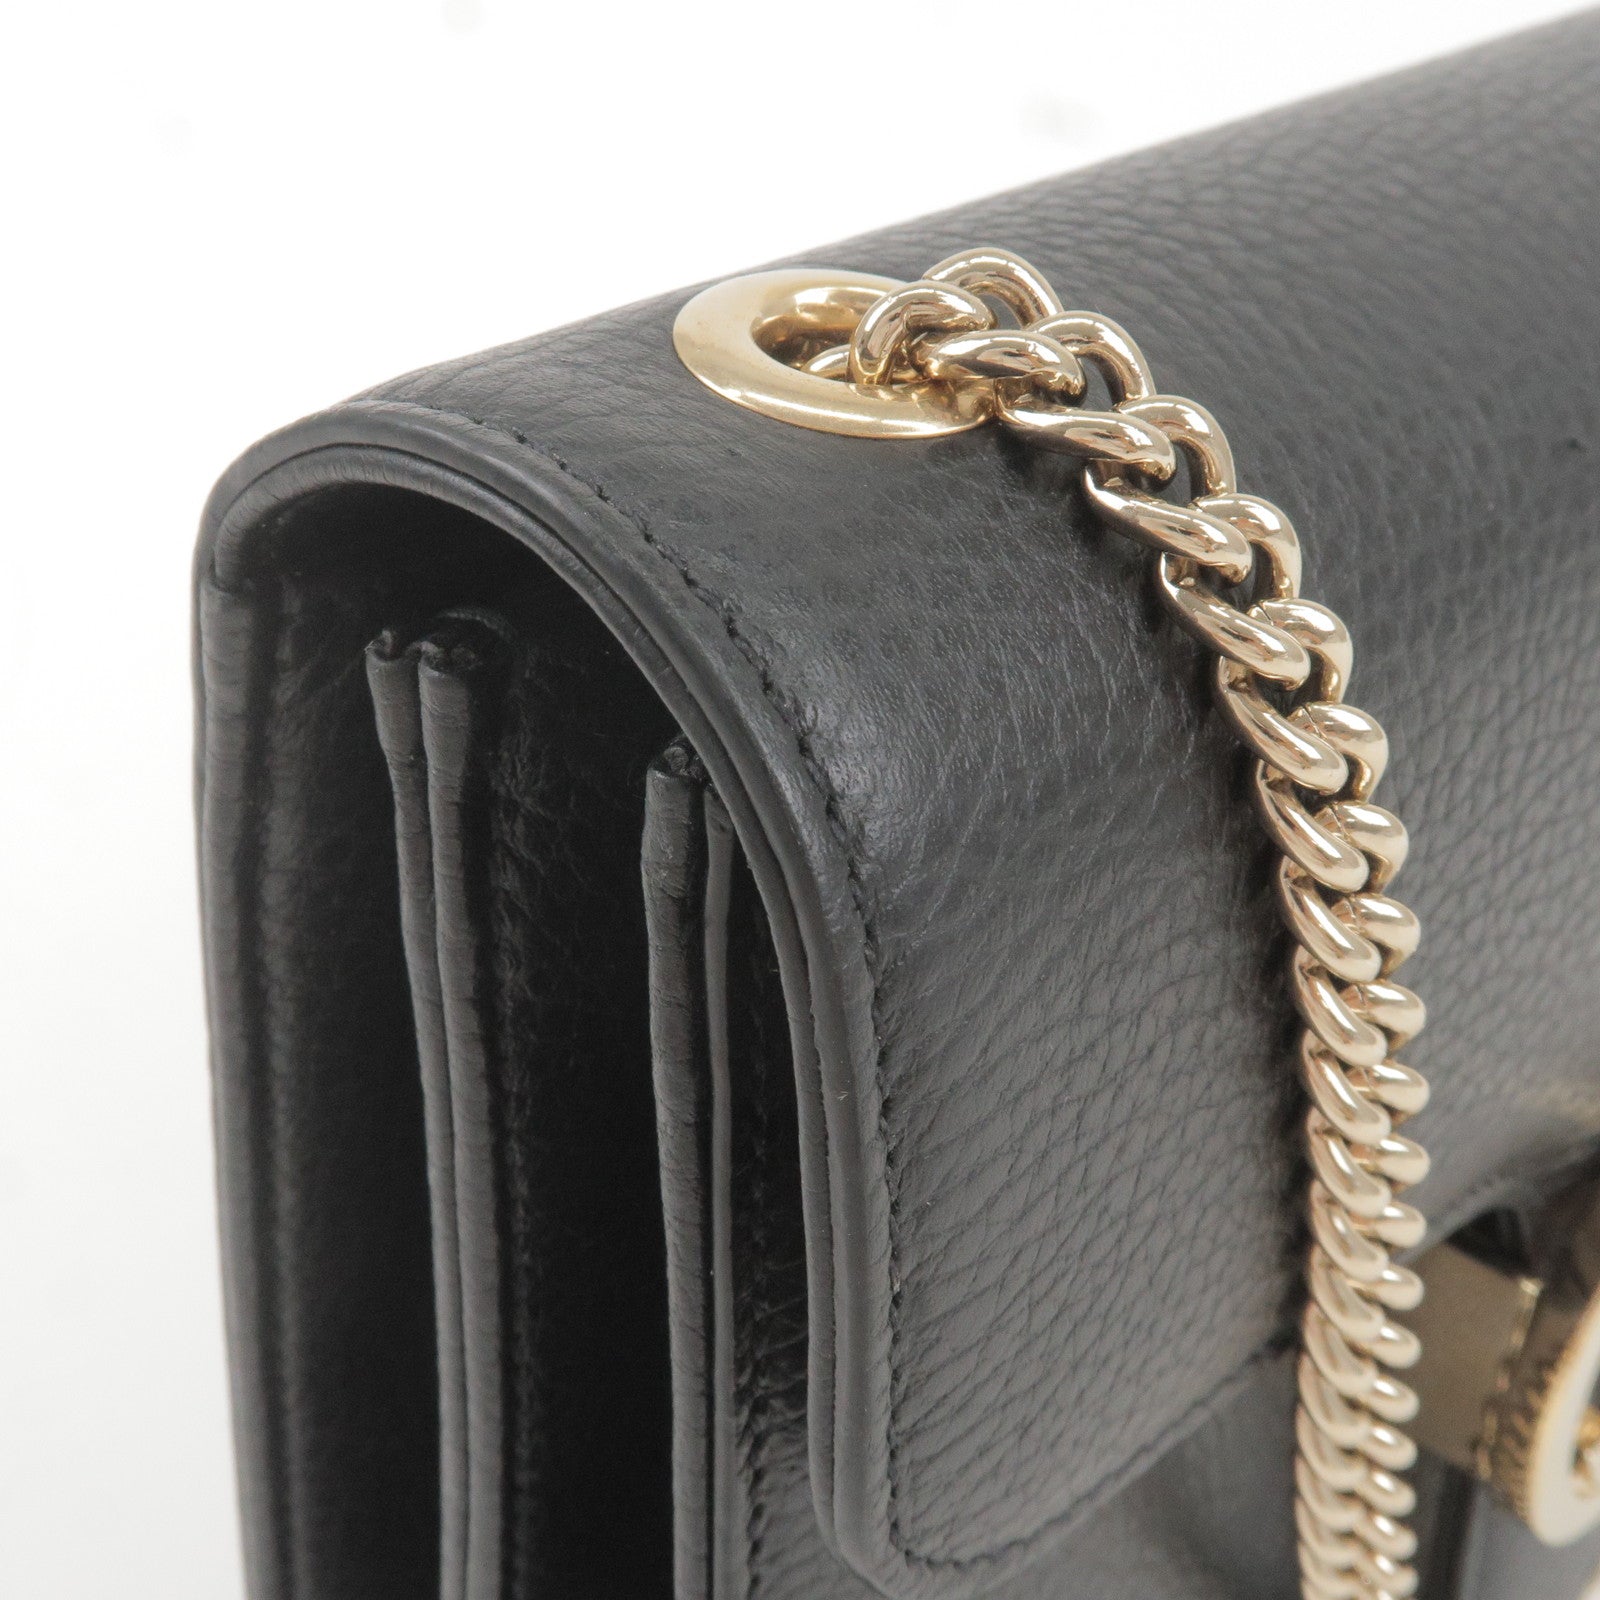 Gucci Grey Leather Interlocking G Shoulder Bag Gucci